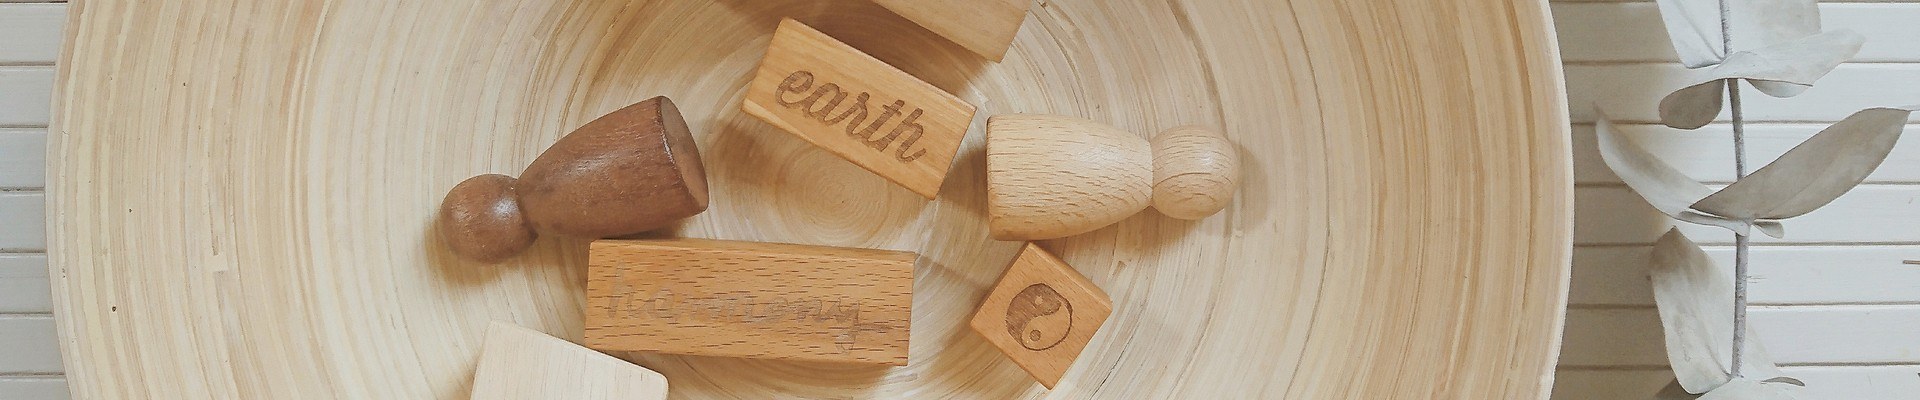 Juguetes didácticos de madera para fomentar el lenguaje y la comunicación